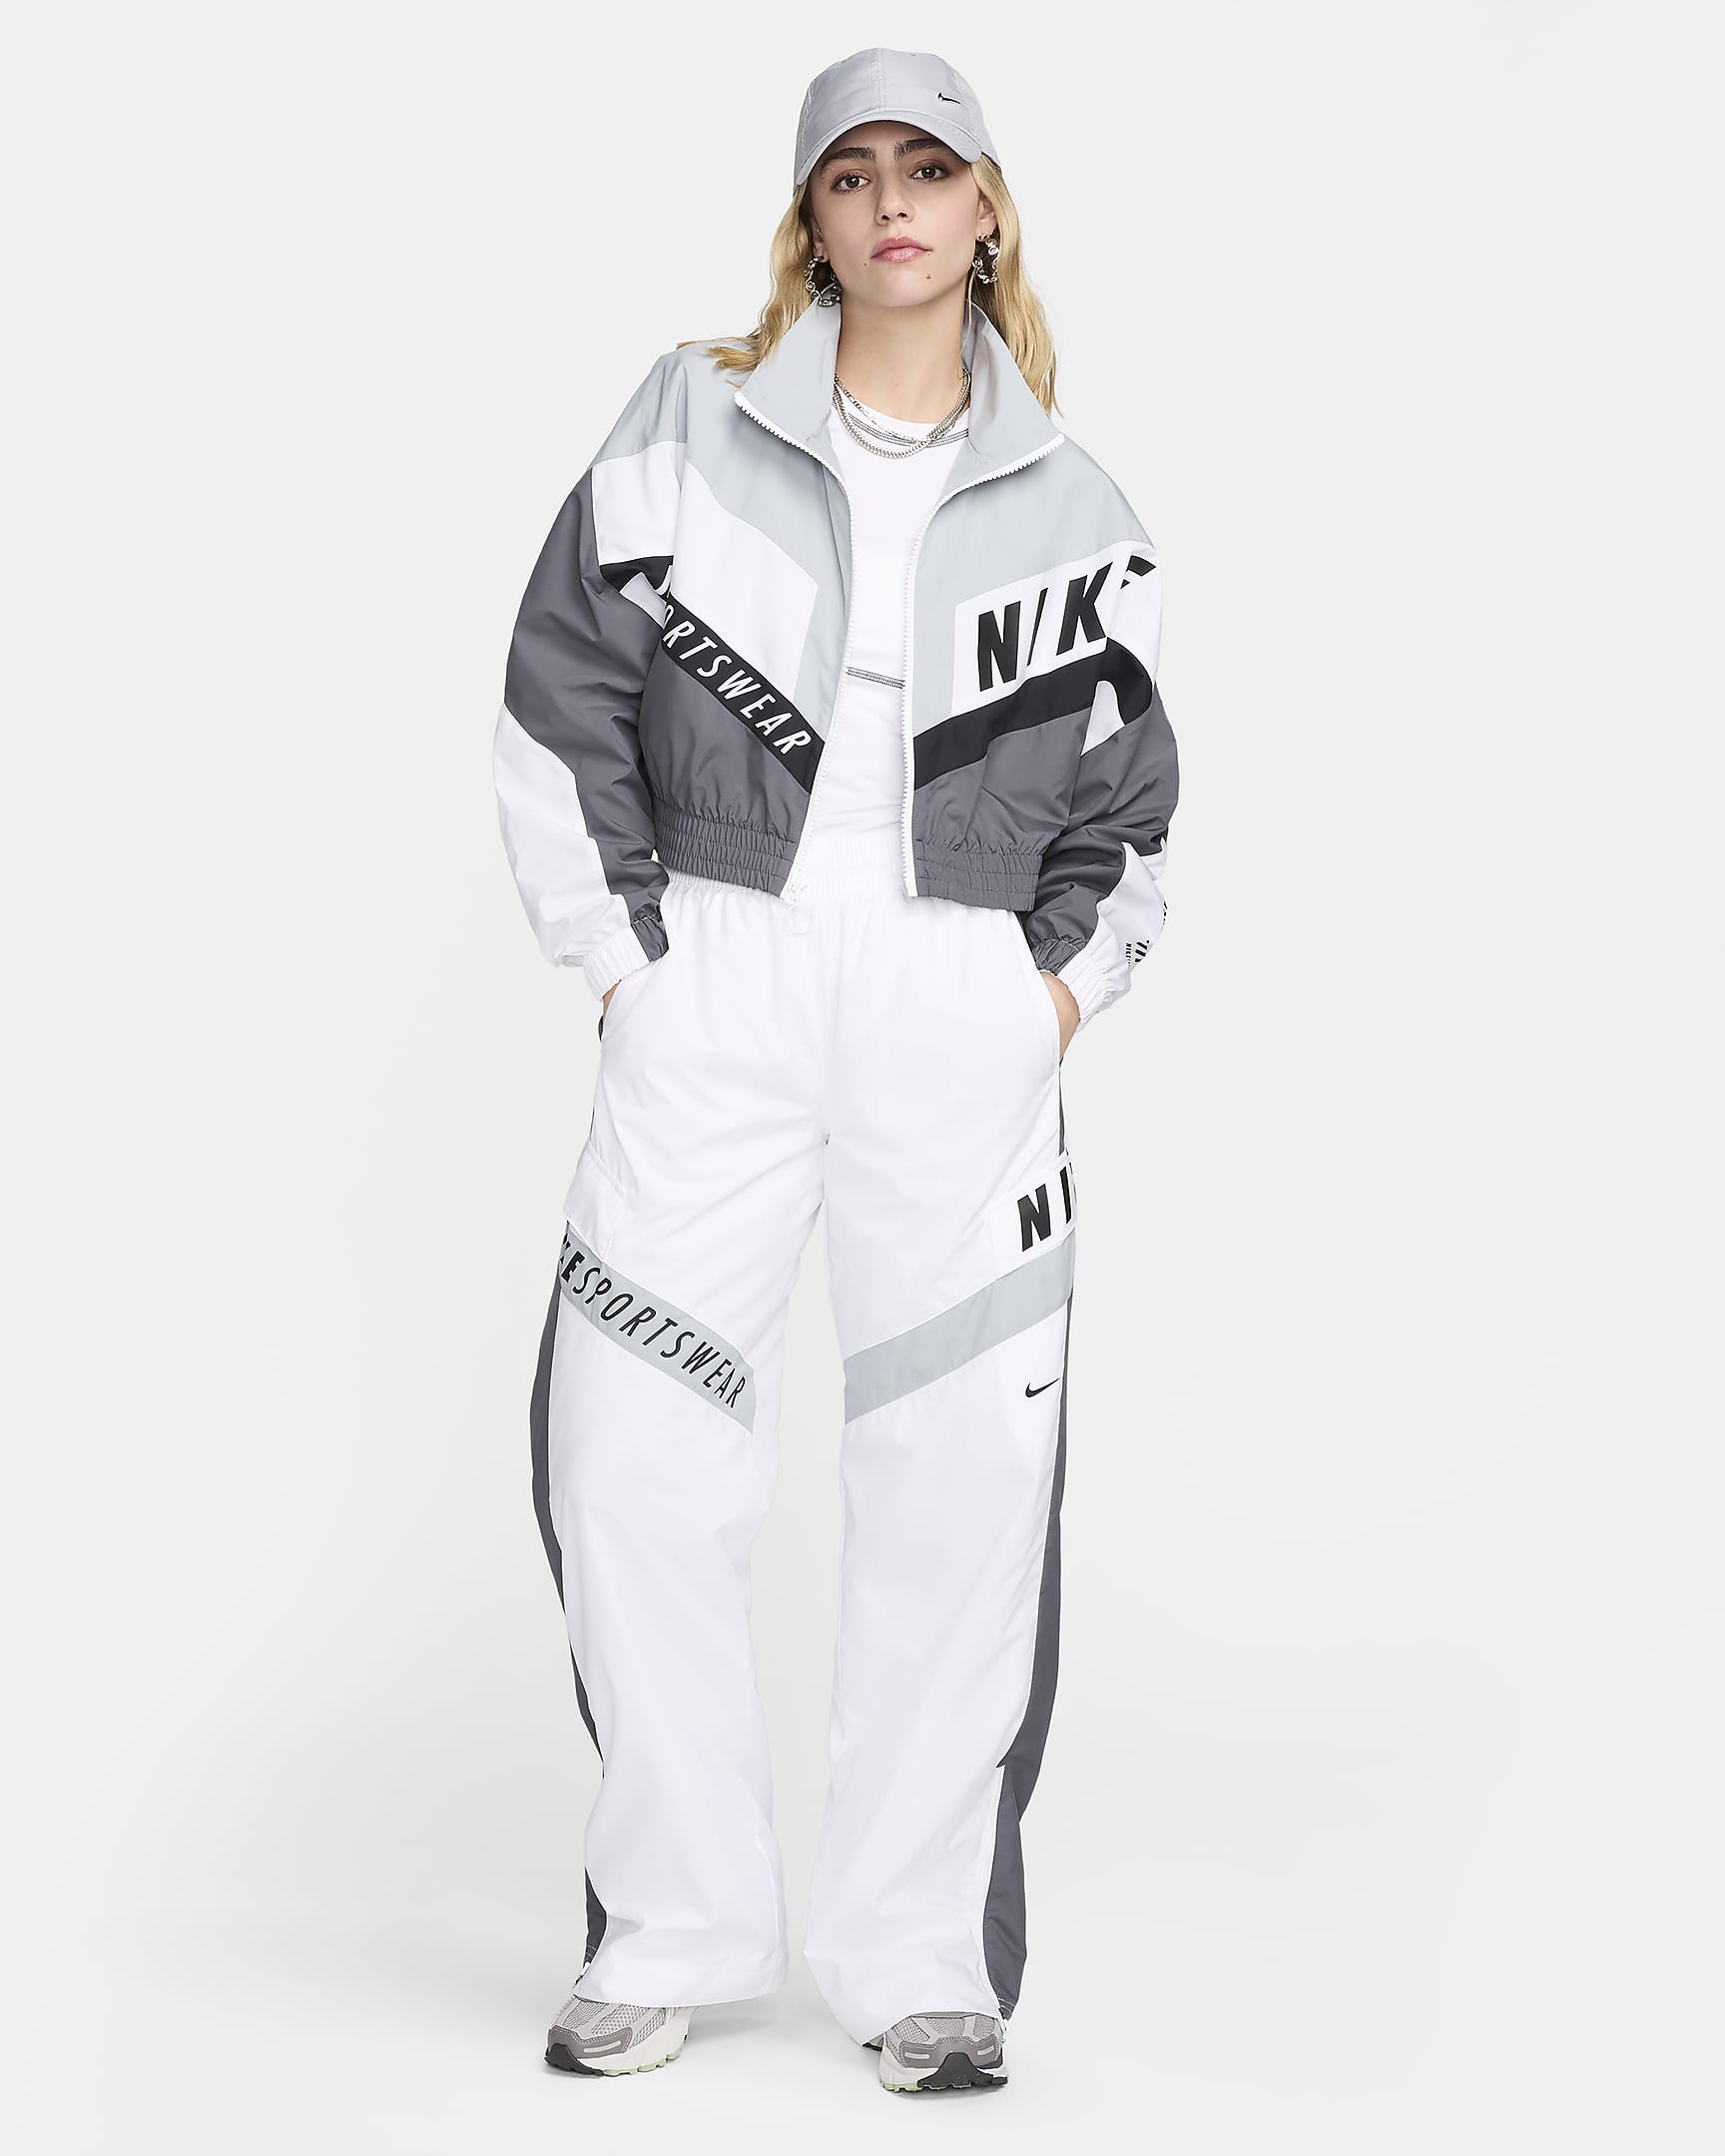 Nike Sportswear Women's Woven Jacket - Iron Grey/Light Pumice/White